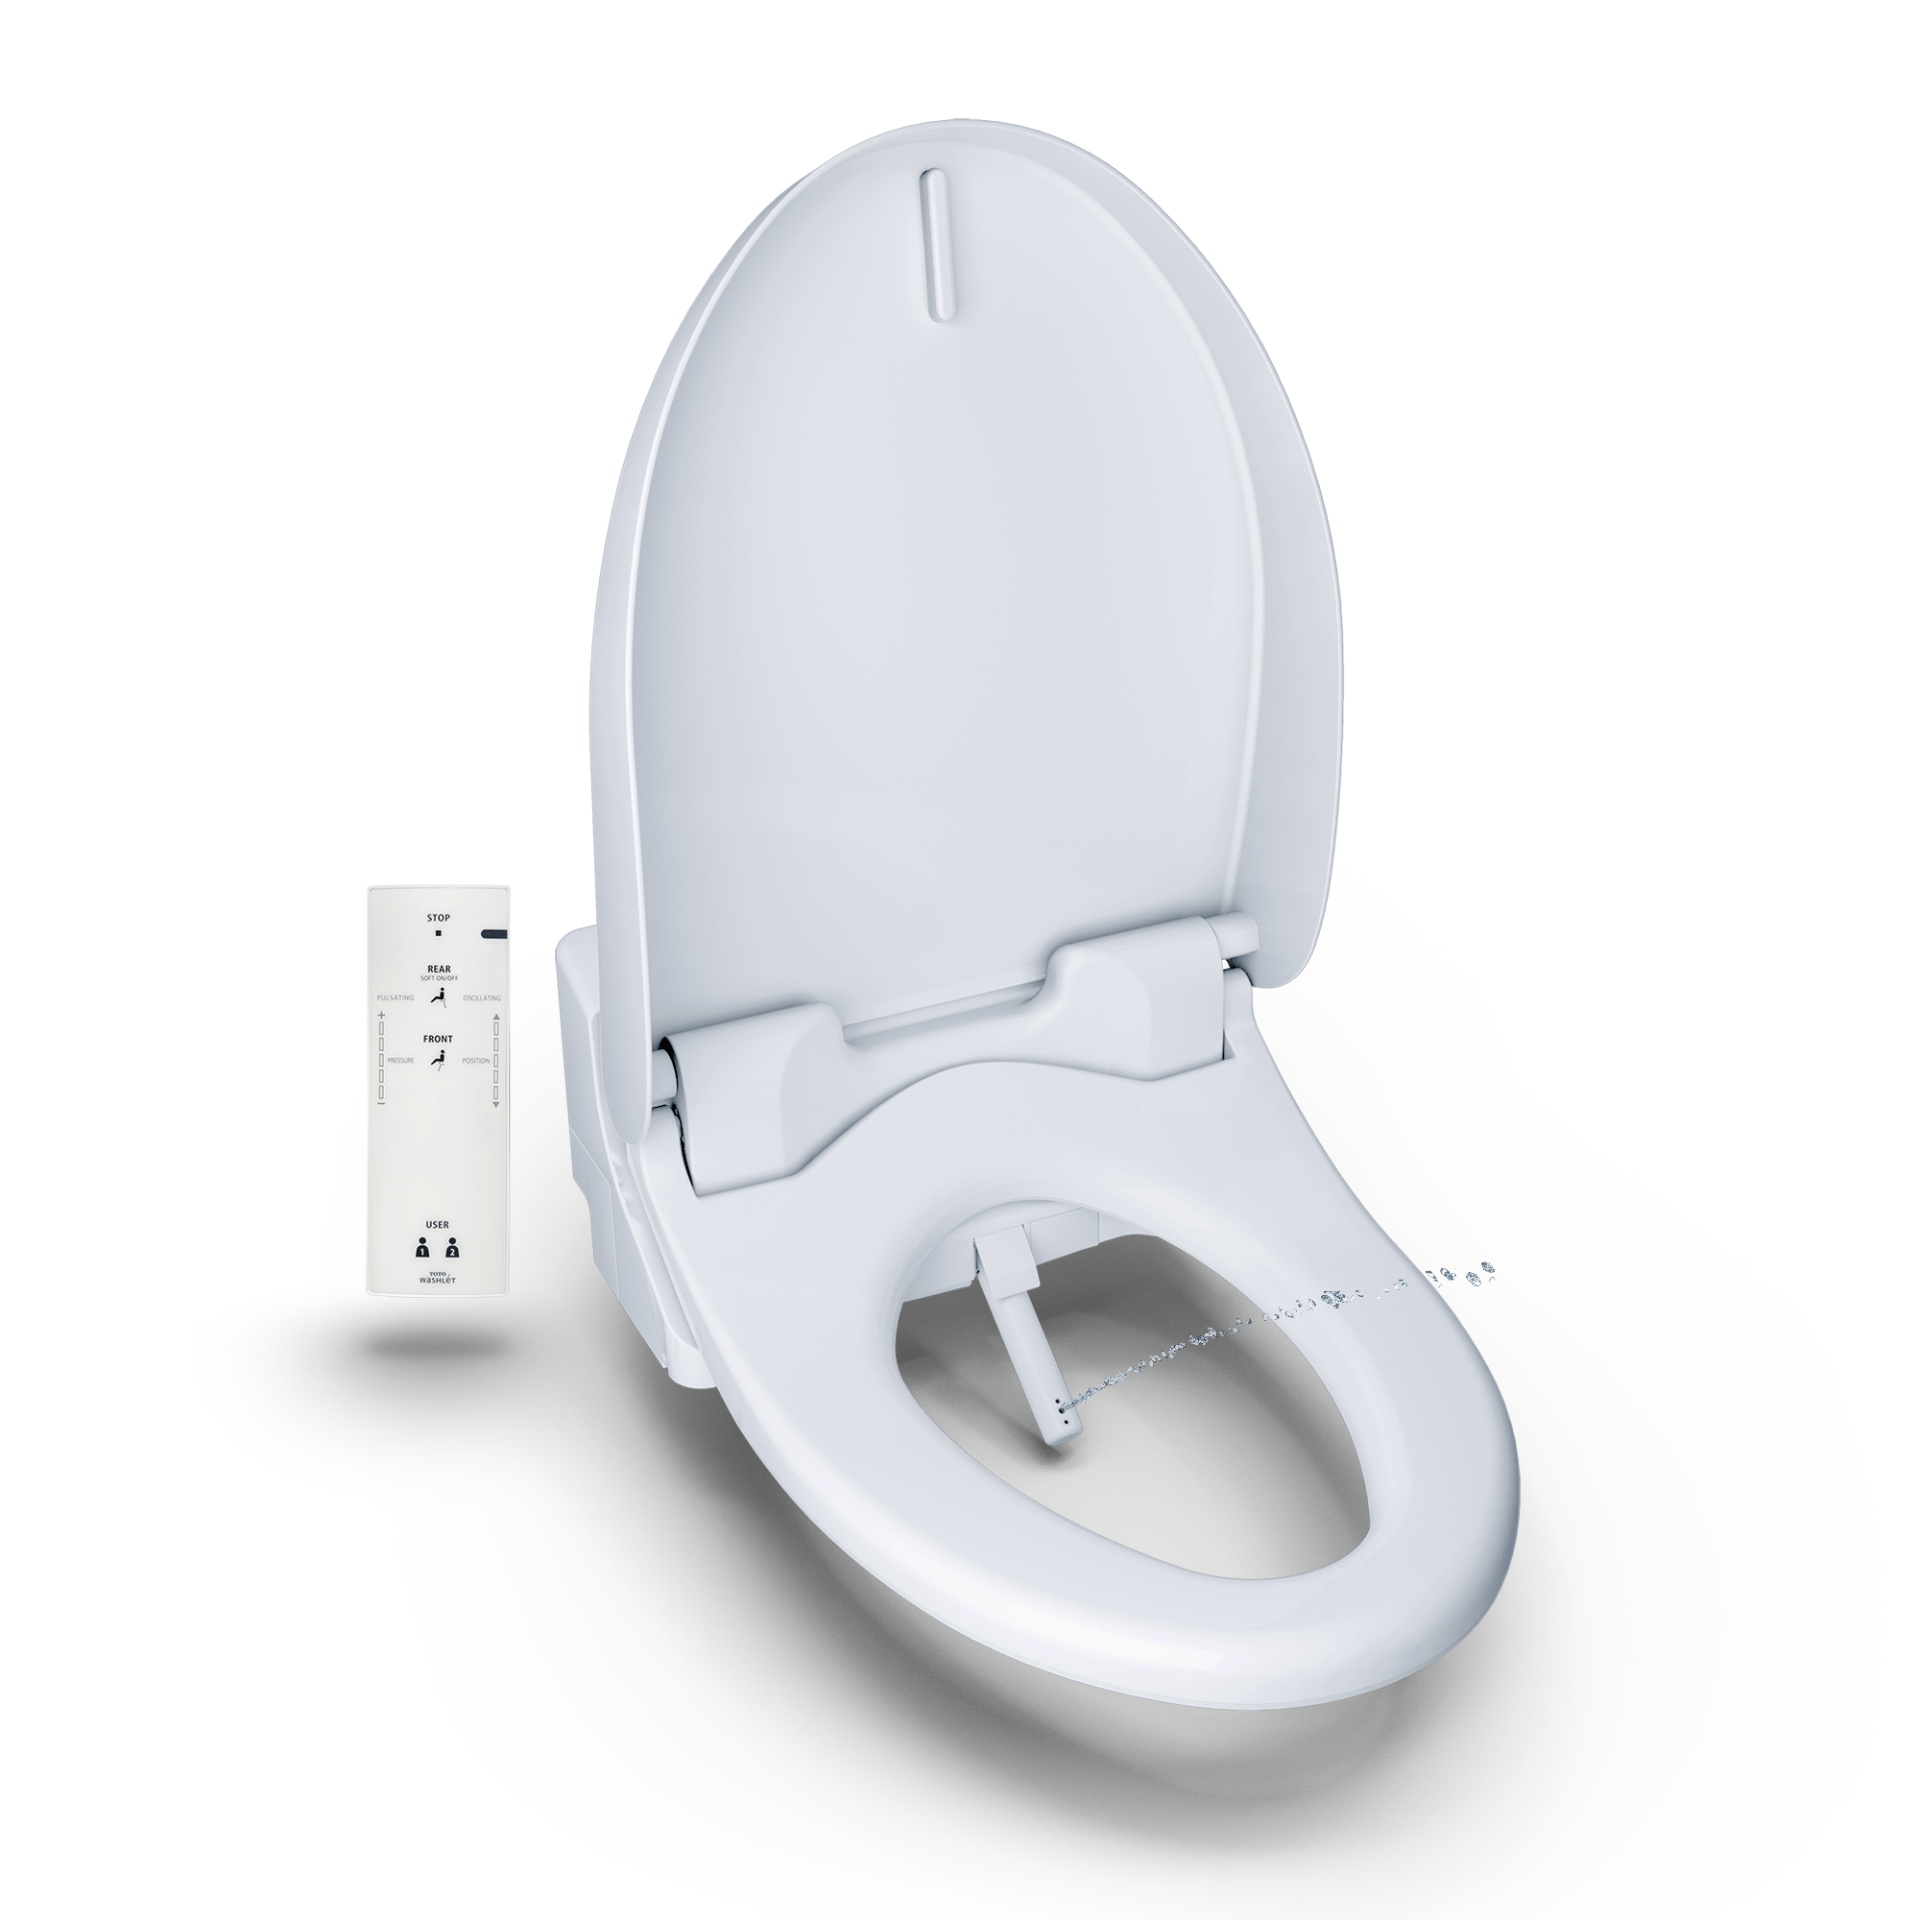 Toto Washlet Electronic Bidet Toilet Seat Cotton White 1060930 Rona